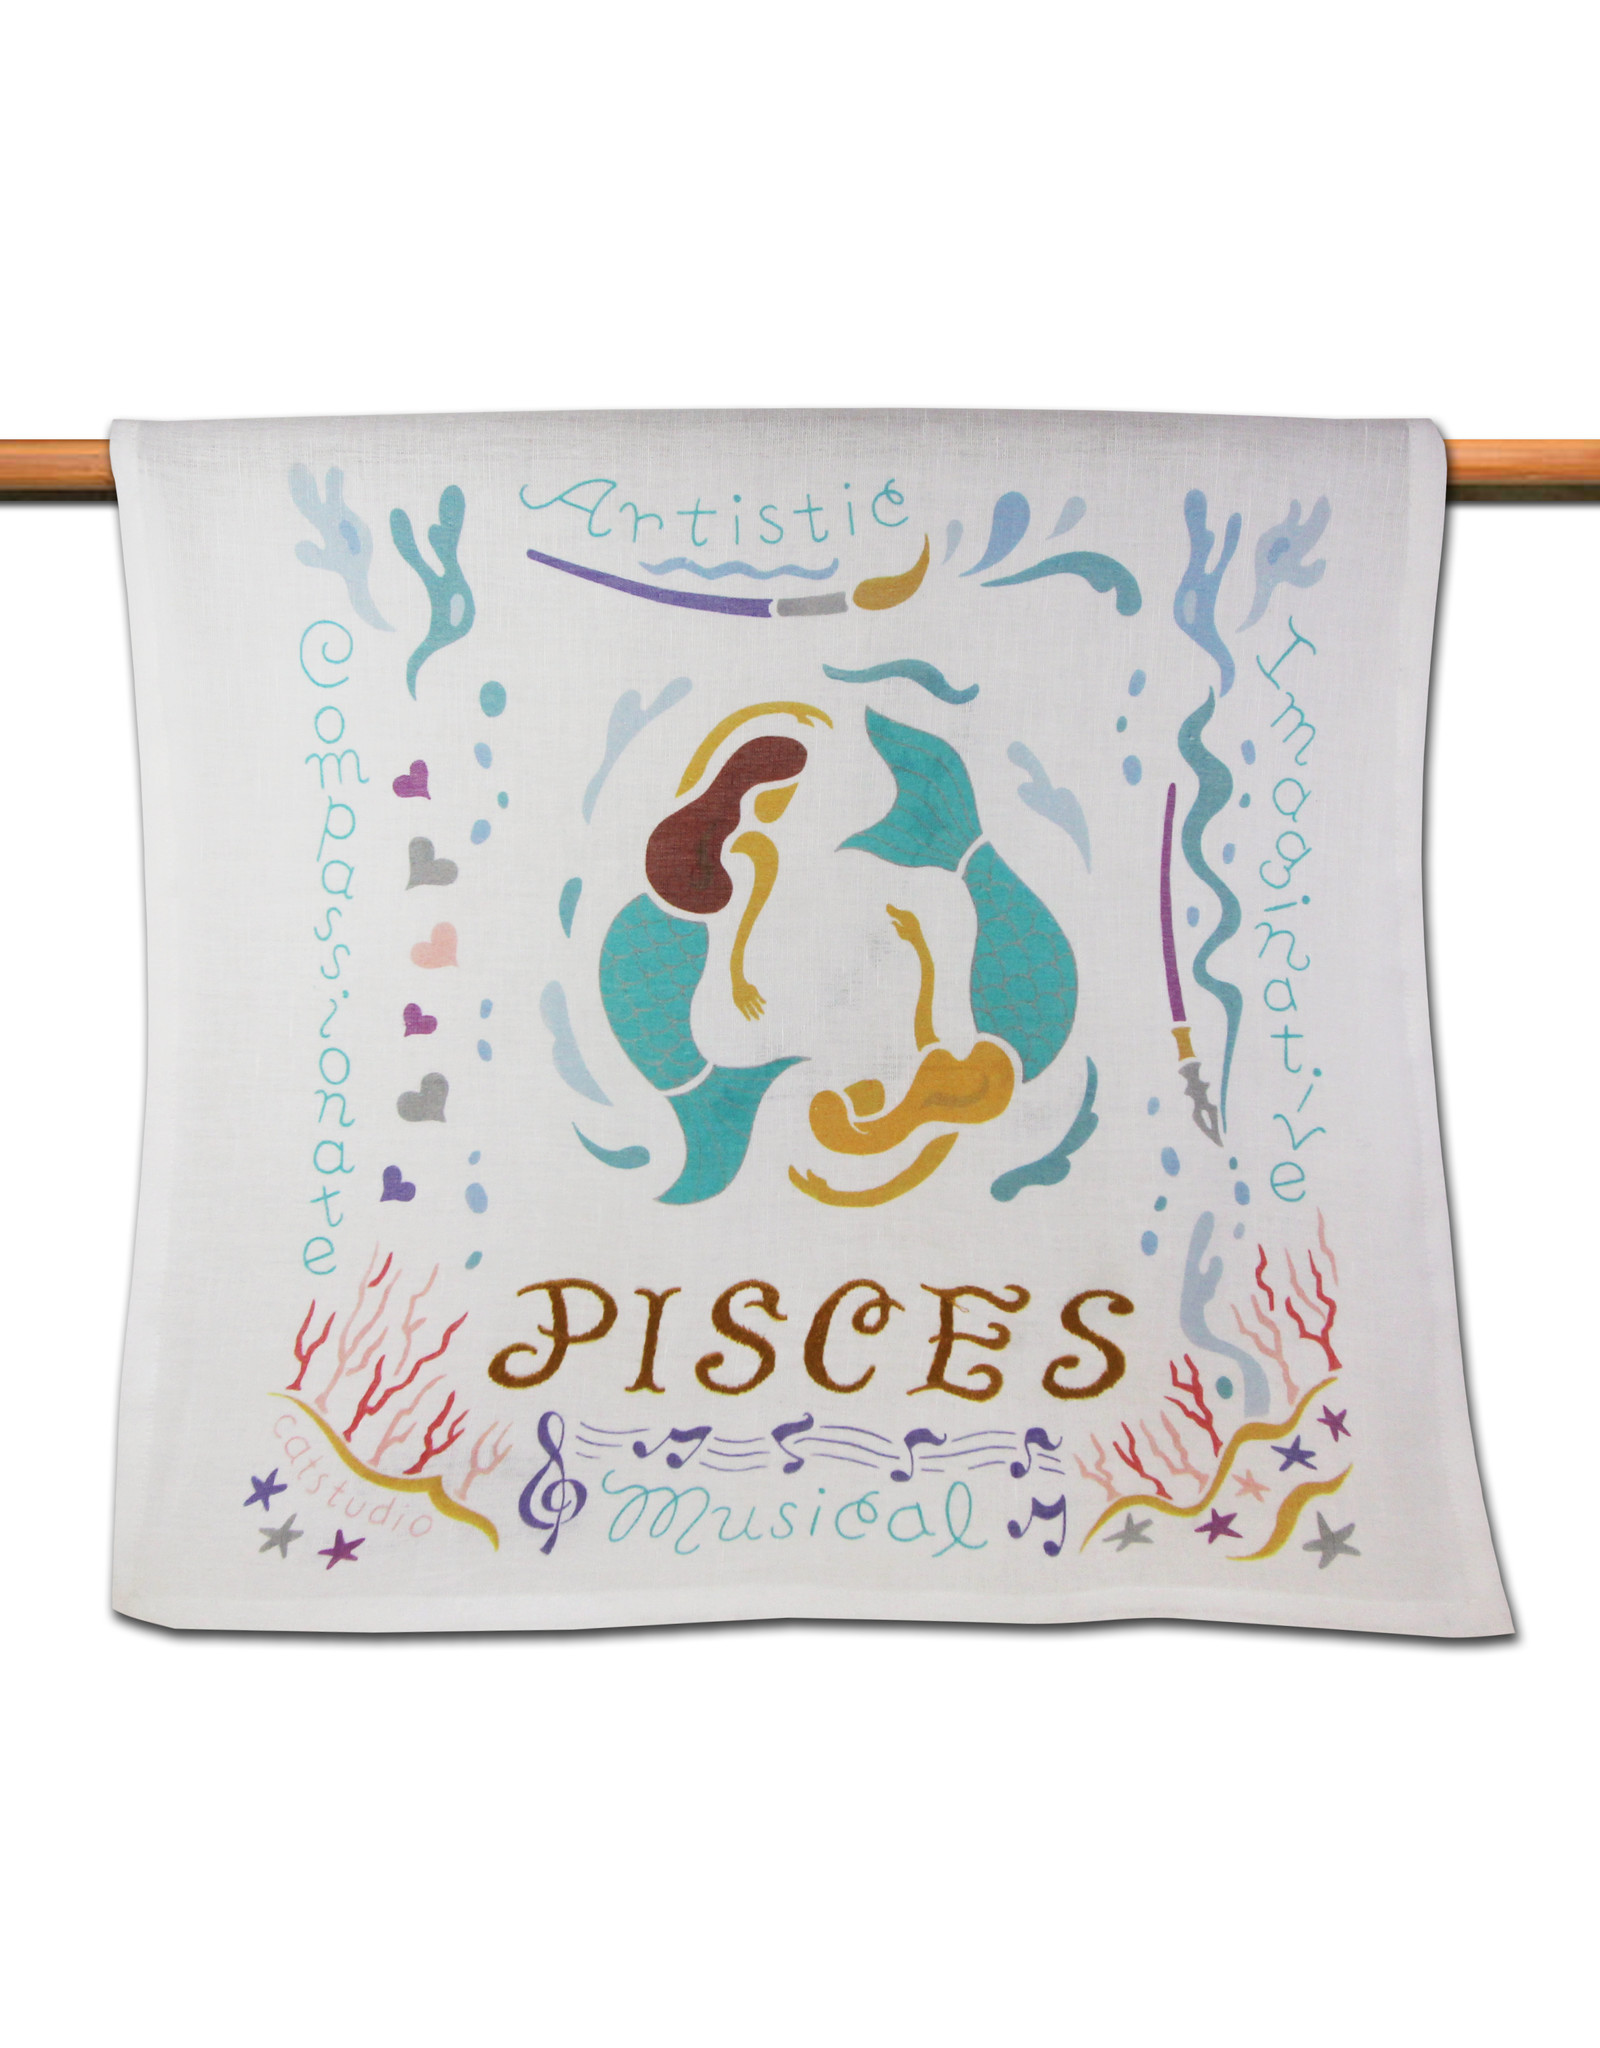 Catstudio Astrology Dish Towel